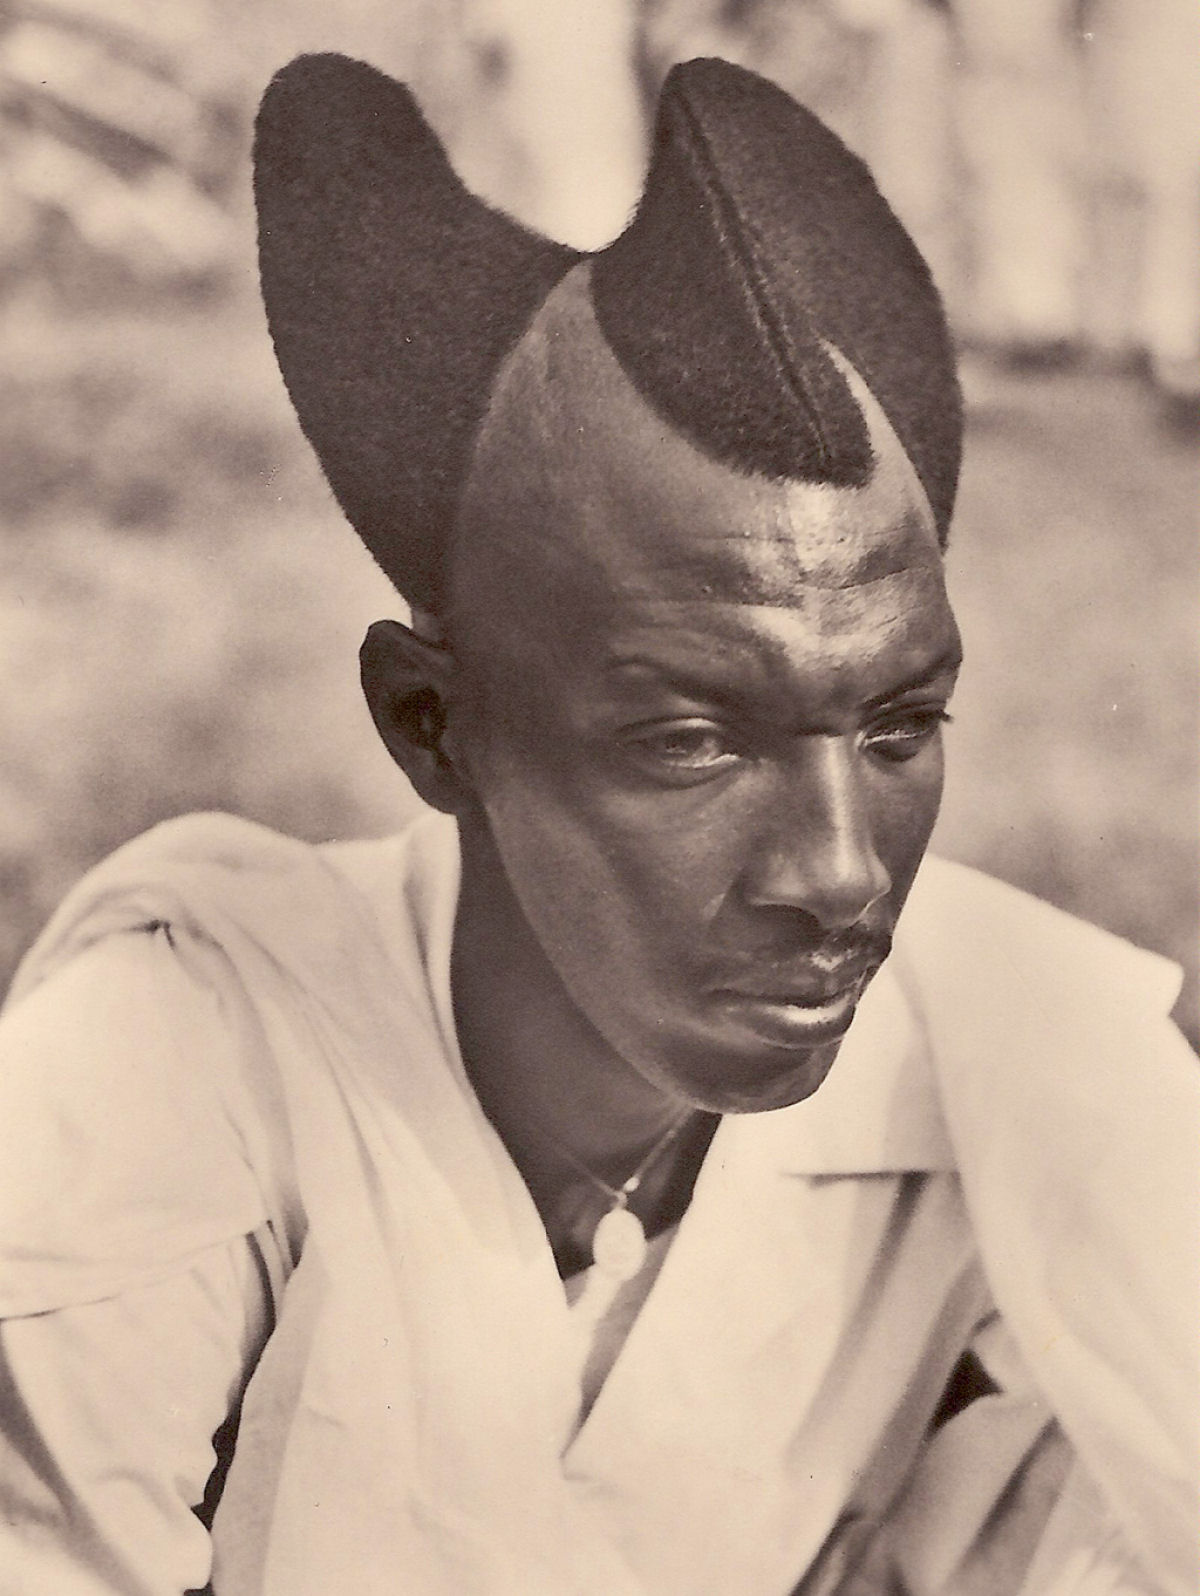 Fotos de quase 100 anos mostram o amasunzu, um penteado único dos ruandeses 01